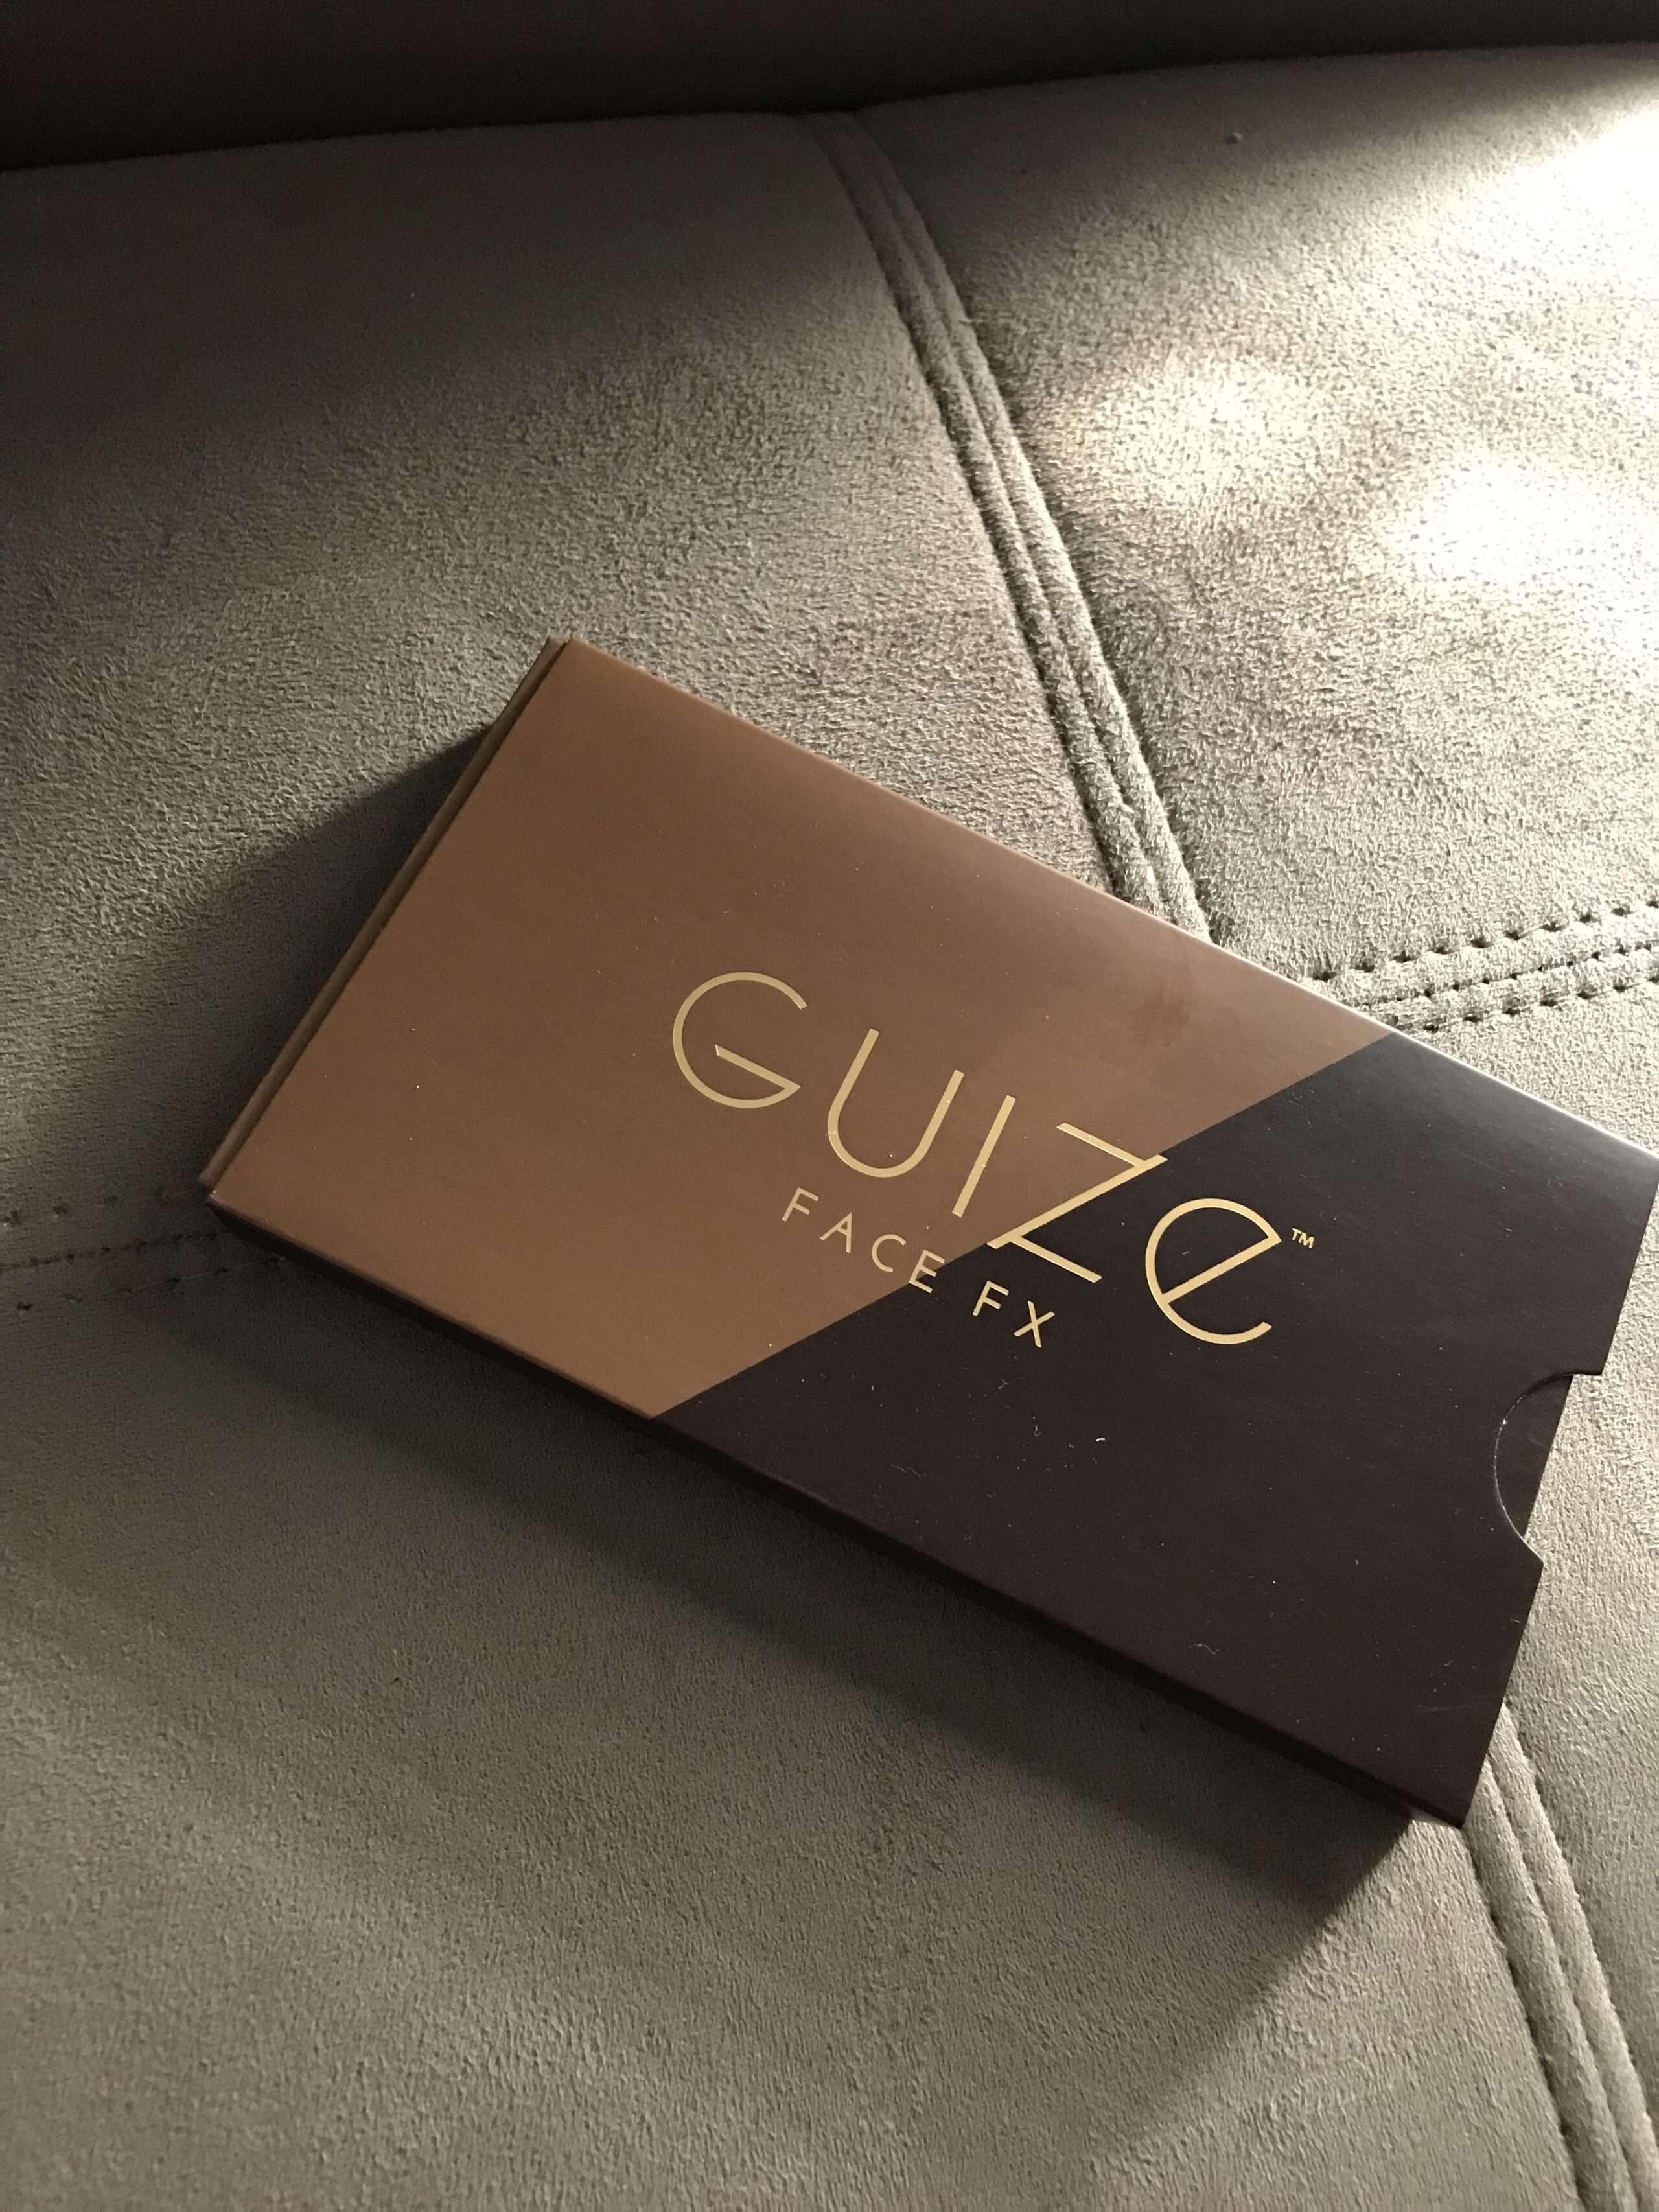 Guize Face FX Make Up Kit